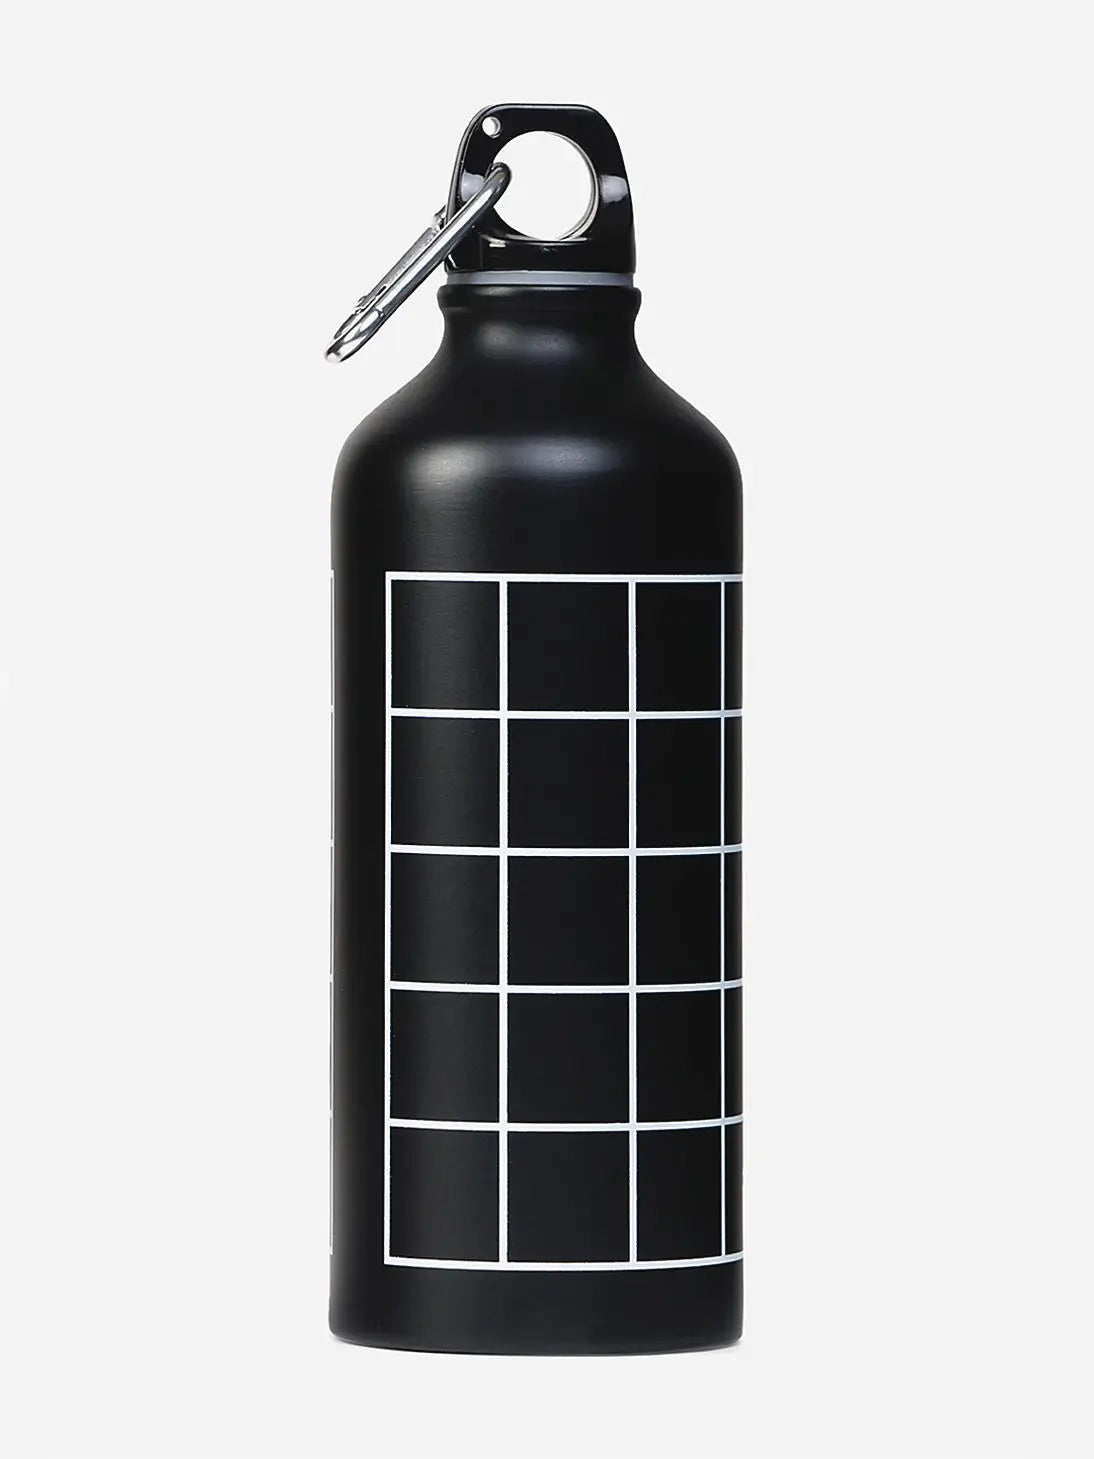 WIKI Pink Steel Water Bottle - 650ml